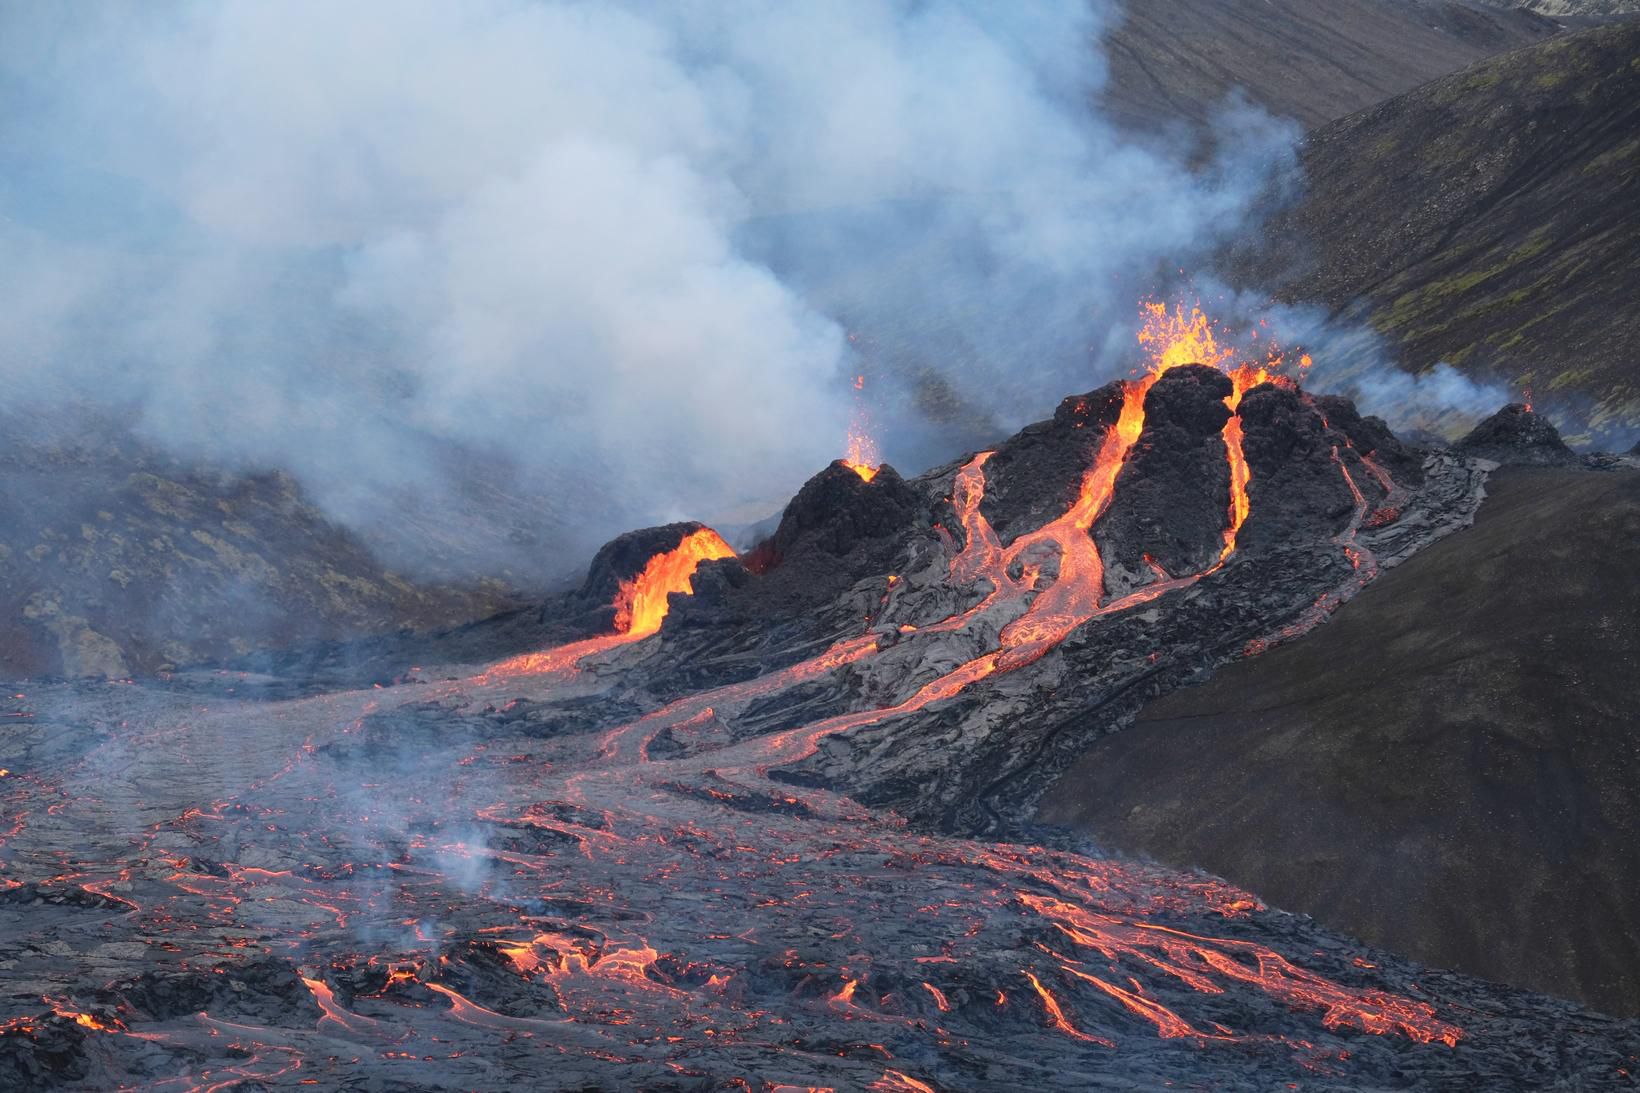 Почему в исландии большое количество вулканов. Извержение вулкана в Исландии 2021. Извержение вулкана в Исландии Эйяфьятлайокудль. Исландия вулкан Эйяфьятлайокудль извержение 2010. Эйяфьядлайёкюдль вулкан в Исландии.